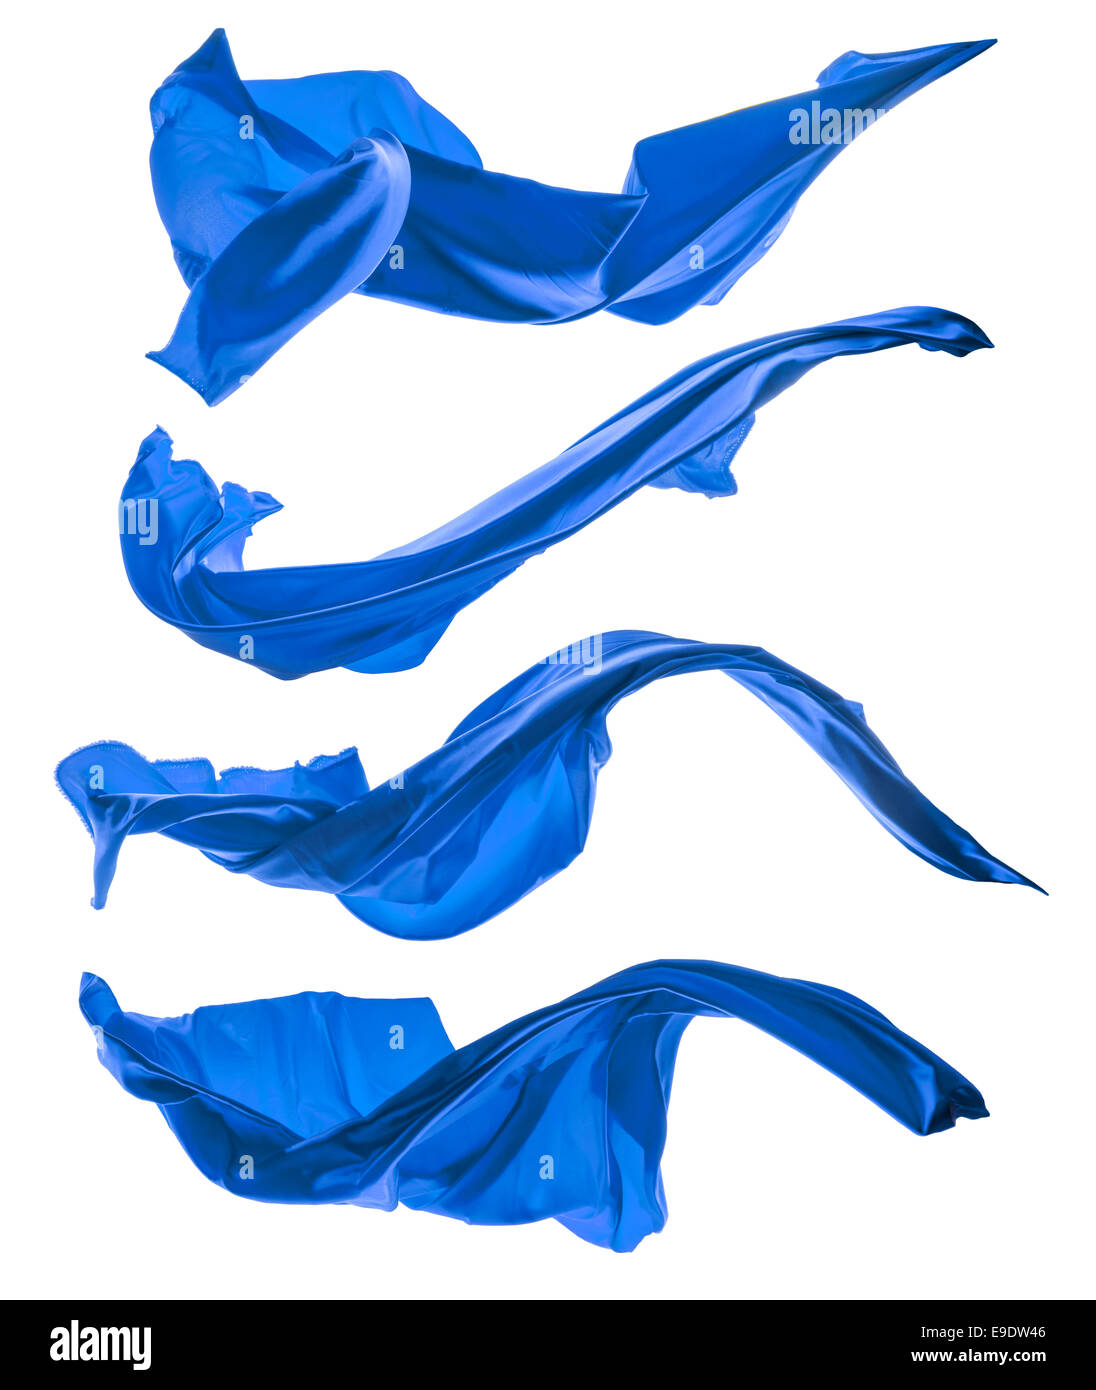 Isolated shots of freeze motion of blue shape, isolated on white background Stock Photo